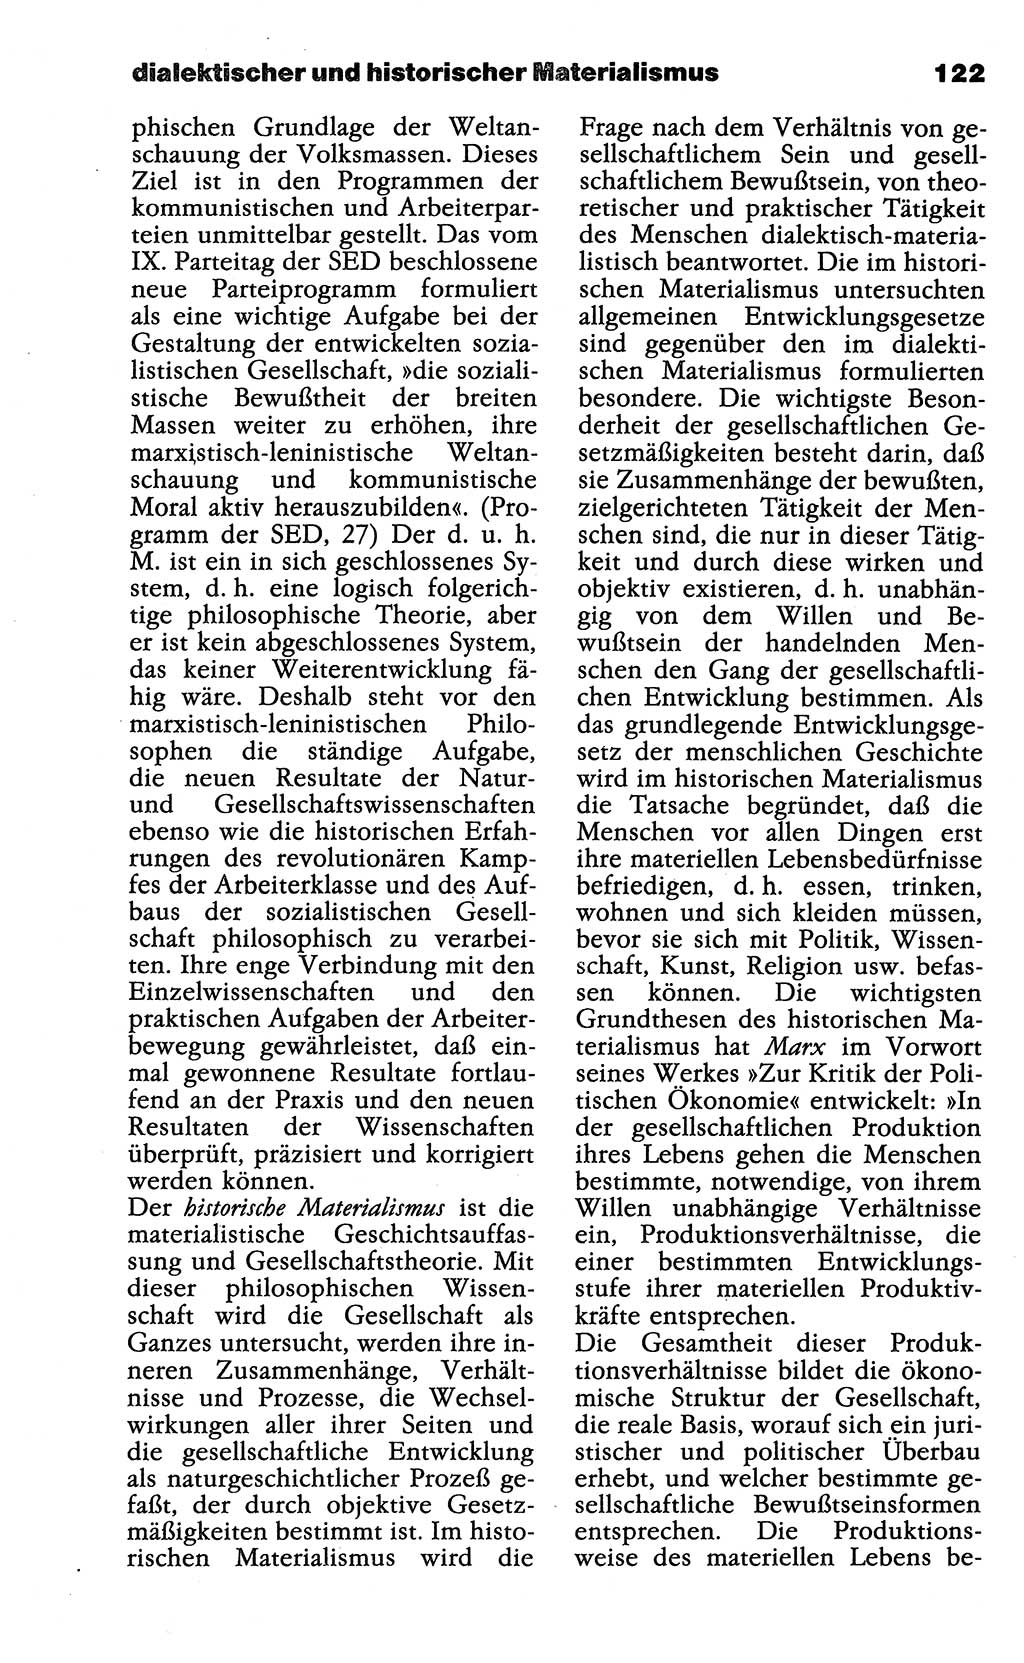 Wörterbuch der marxistisch-leninistischen Philosophie [Deutsche Demokratische Republik (DDR)] 1985, Seite 122 (Wb. ML Phil. DDR 1985, S. 122)